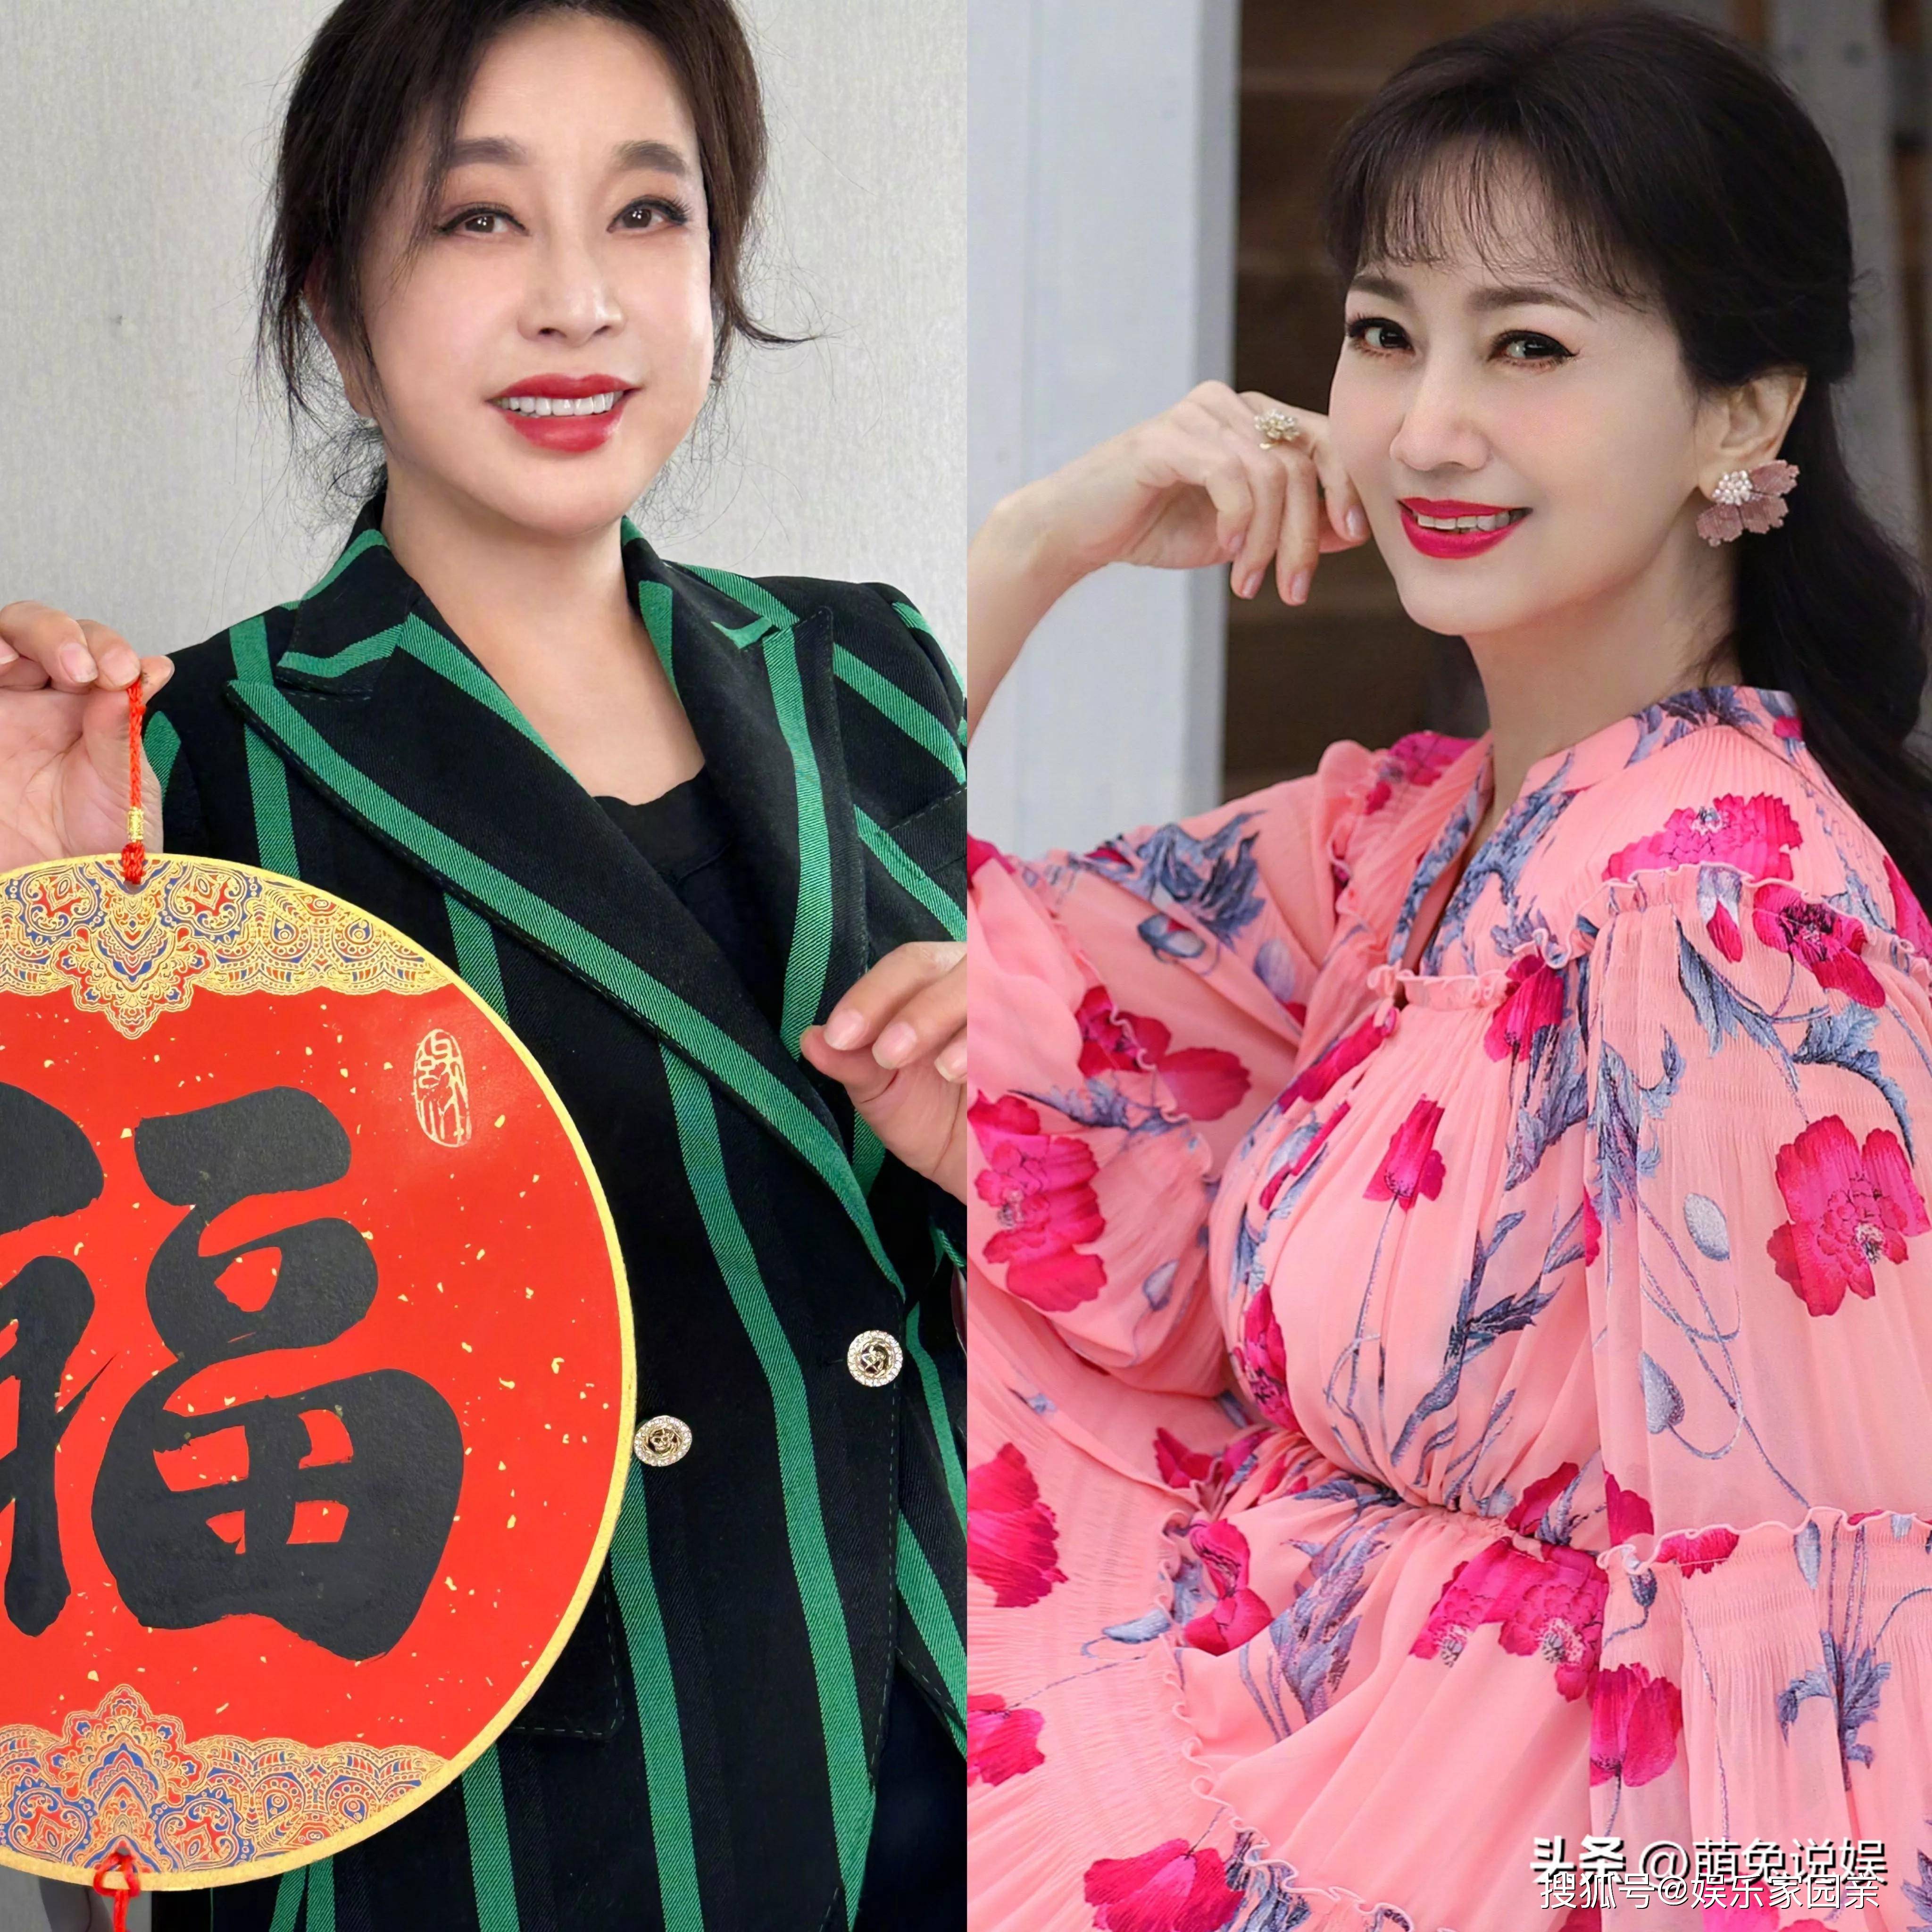 原创刘晓庆晒日常美照扎俩麻花辫穿红衣活力十足74岁心态堪比少女